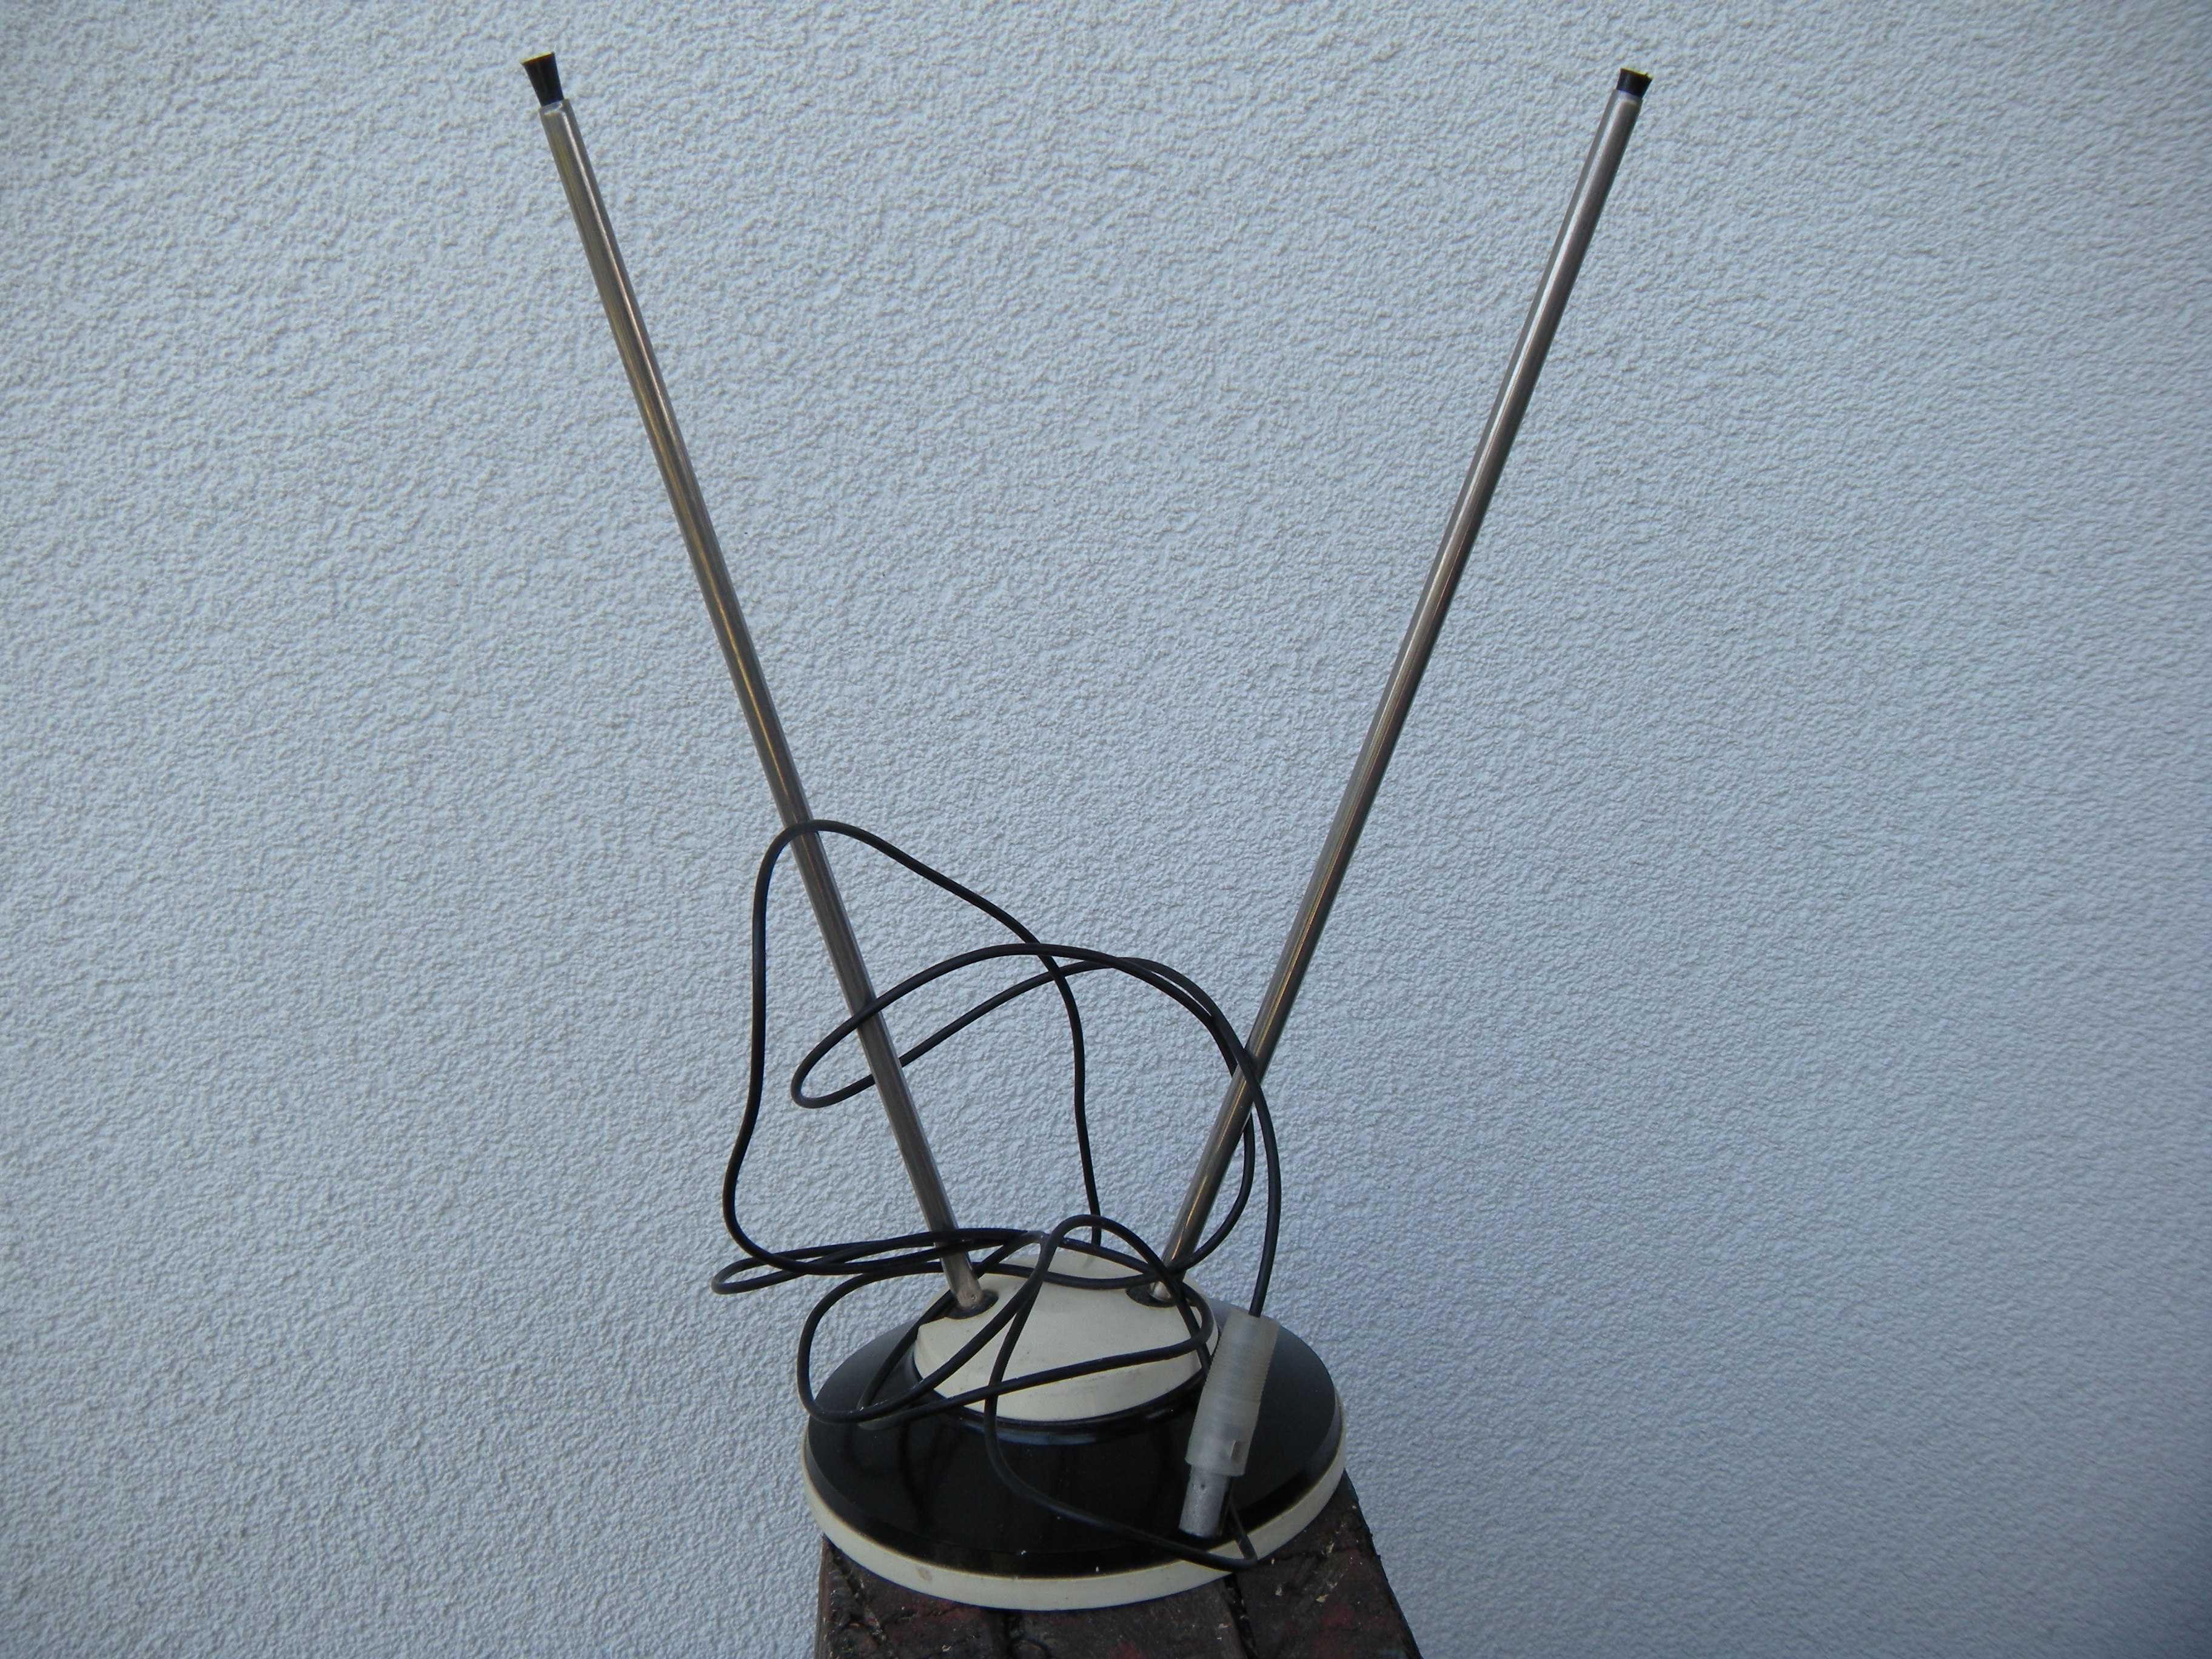 stara sowiecka zsrr antena teleskopowa prl do radio lampowe telewizor